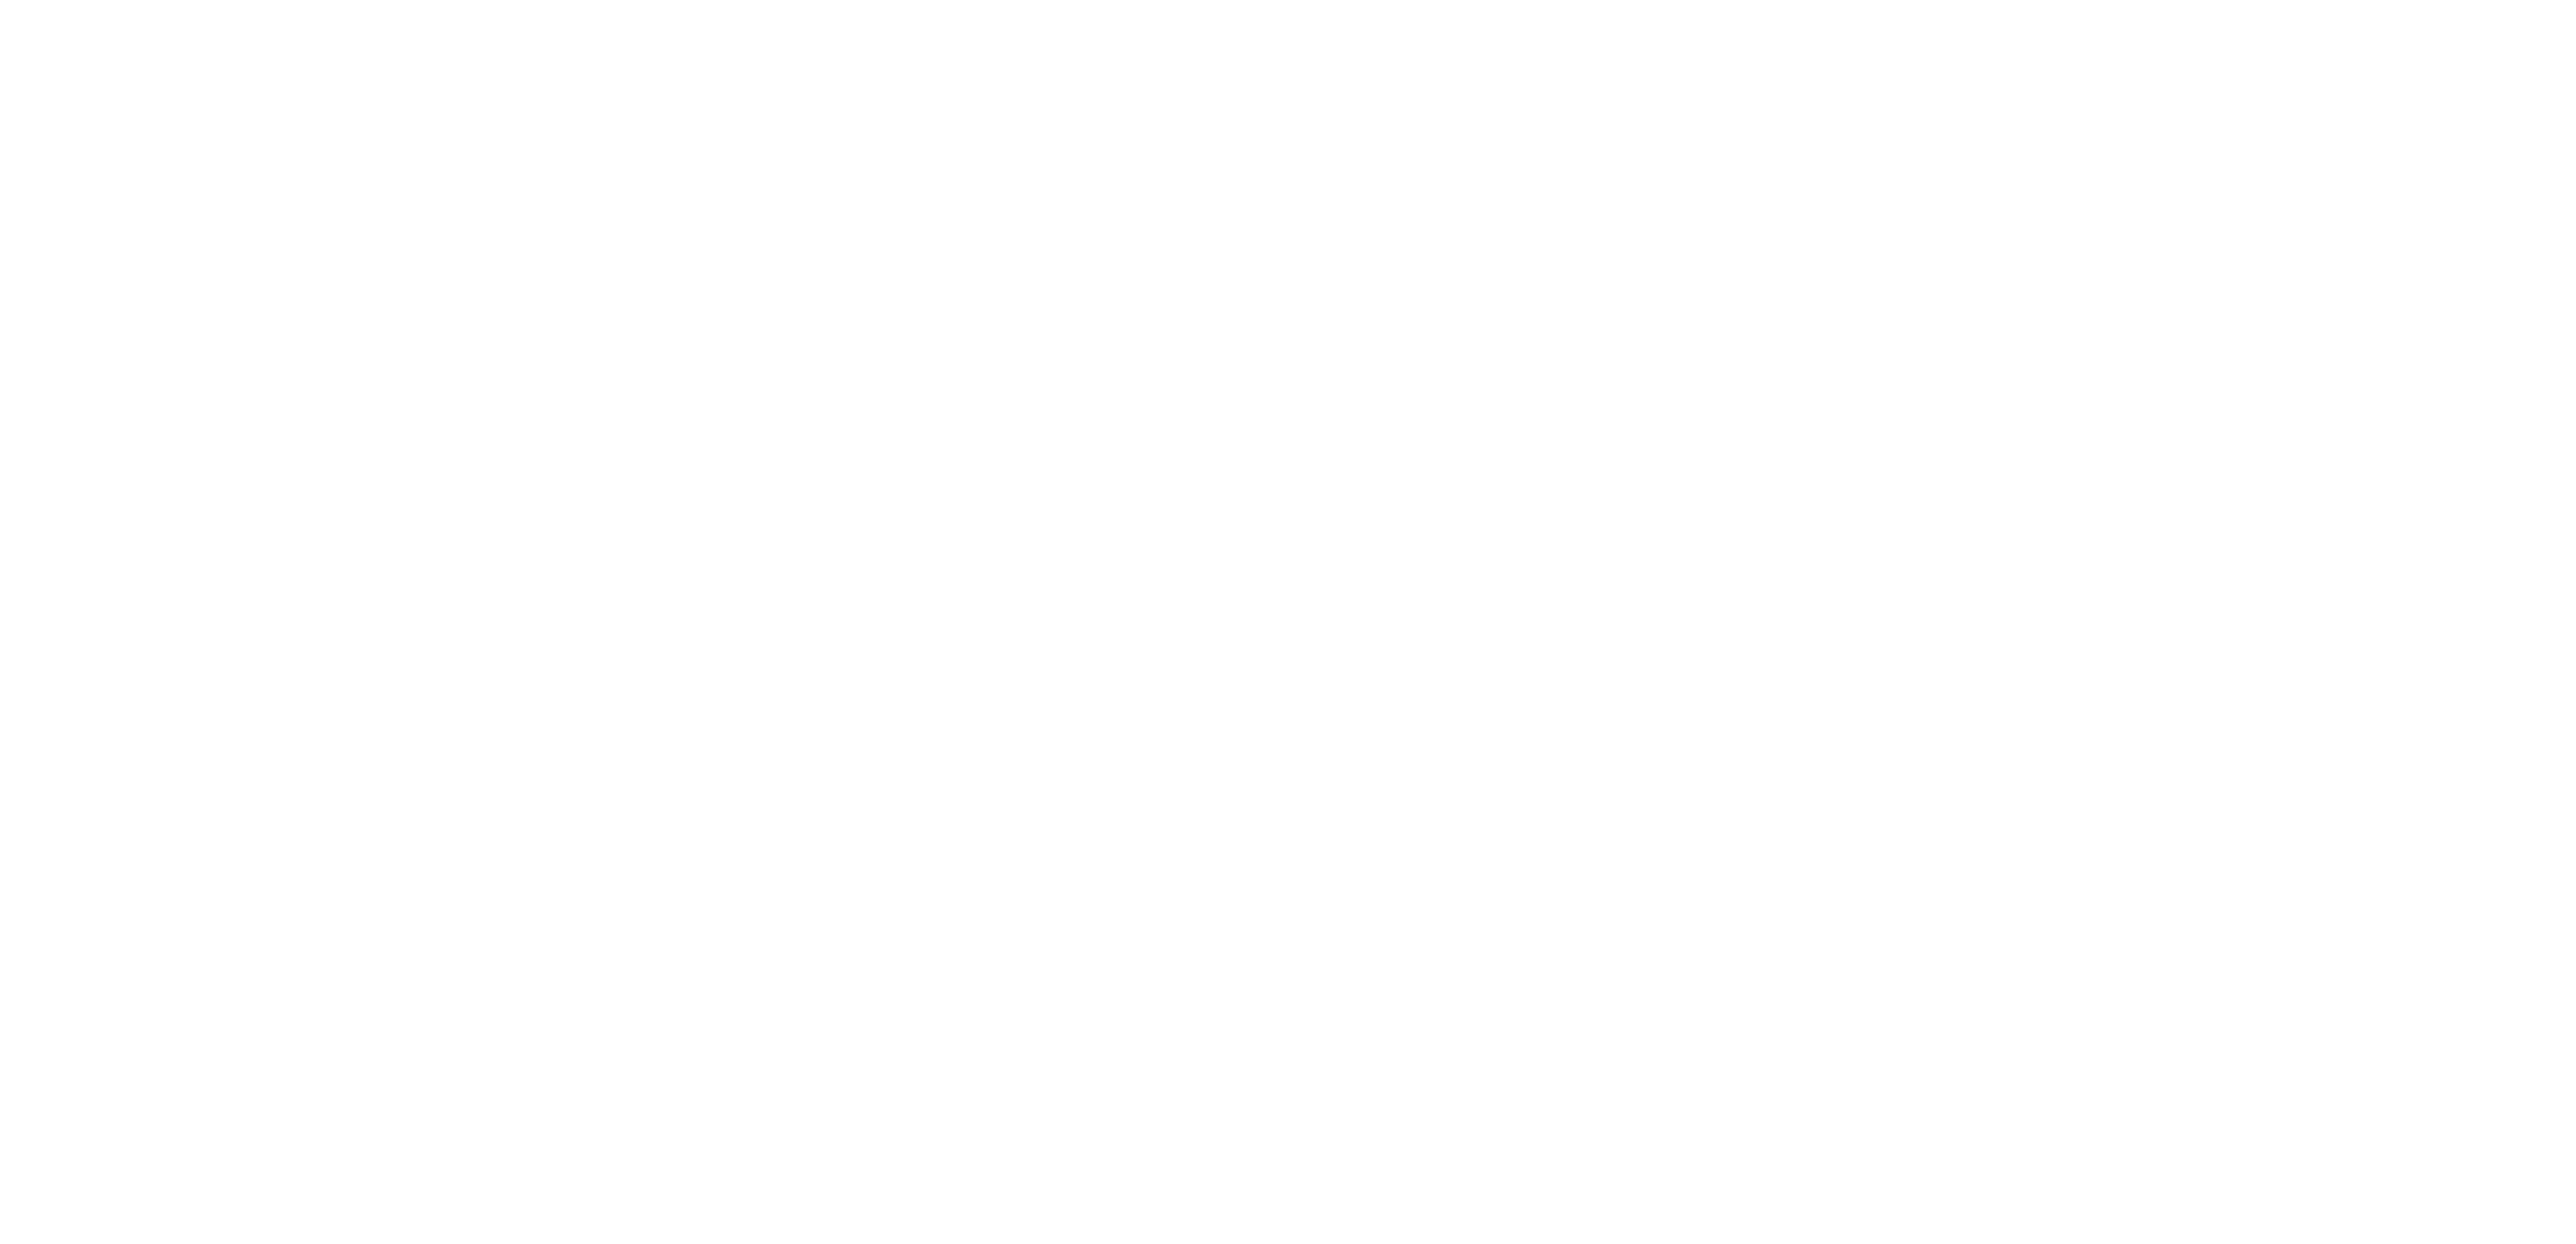 TeCompro Olla Arrocera Black & Decker RC860 1.8L TeCompro